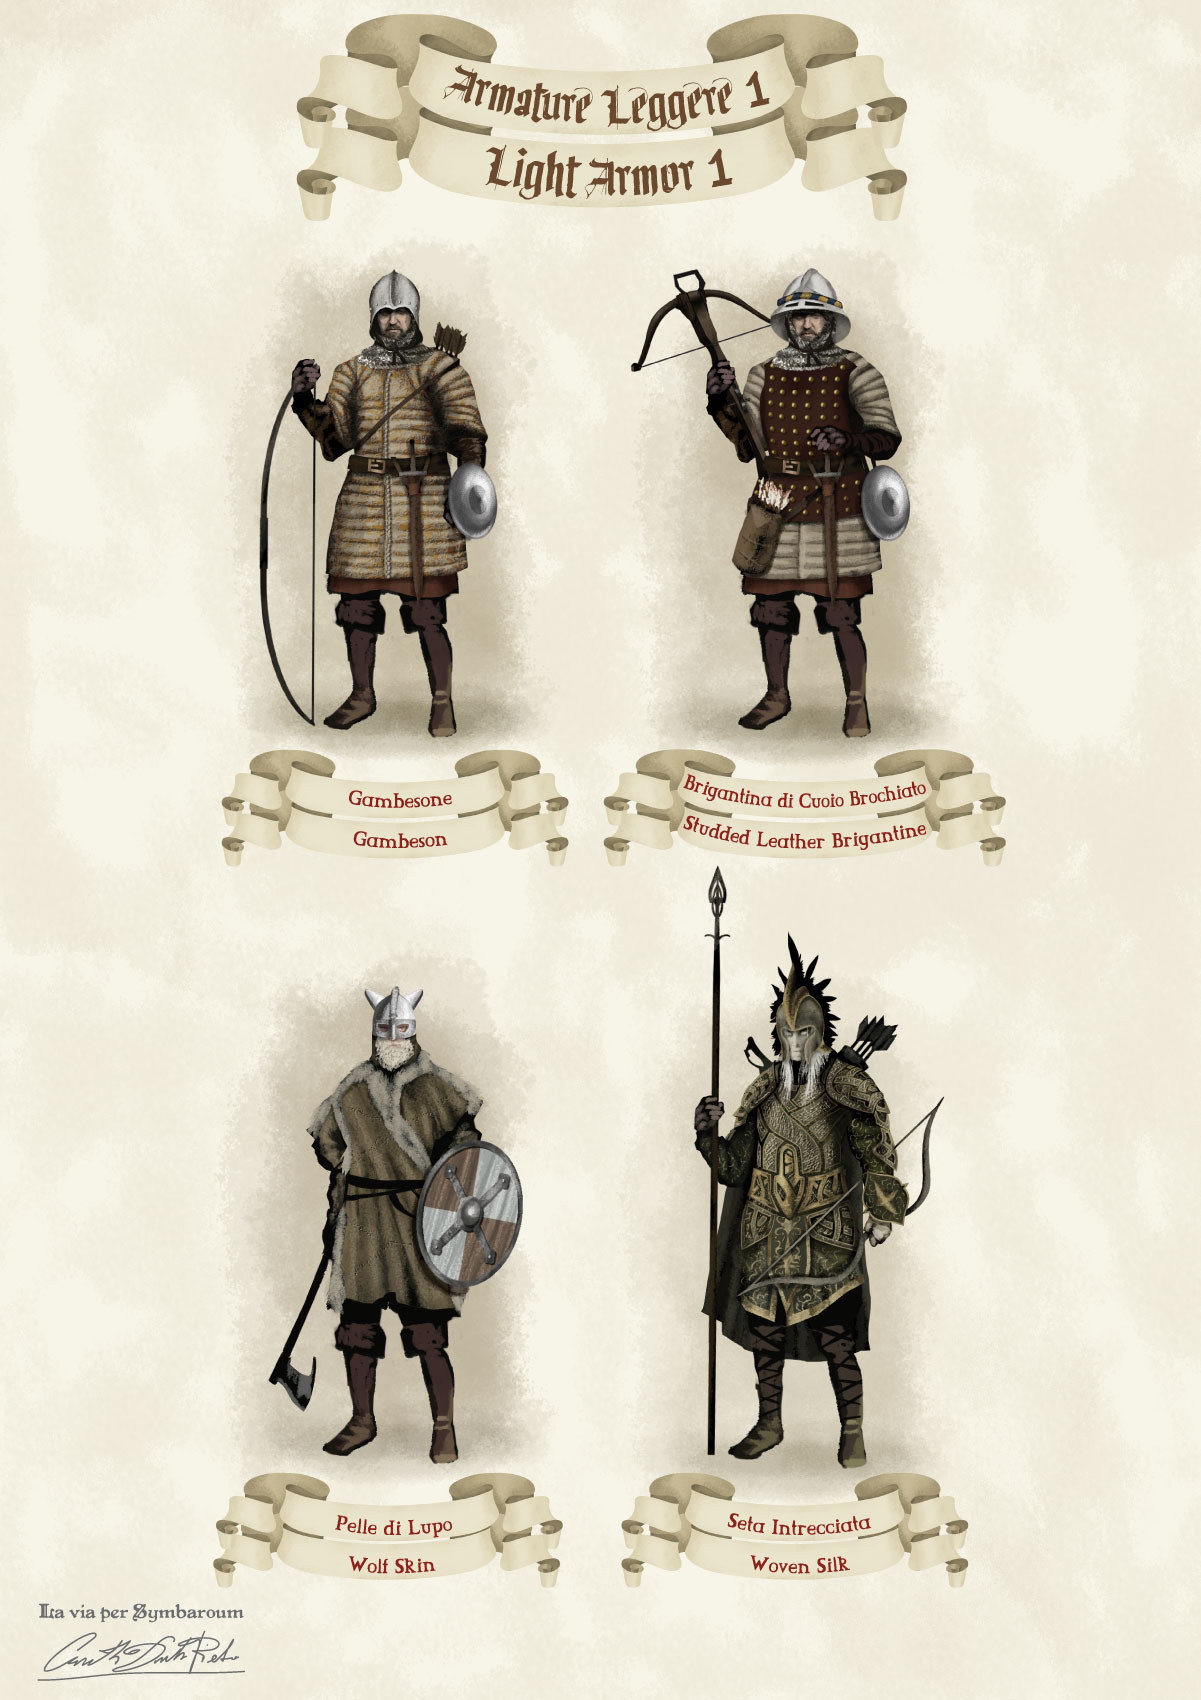 Immagini di armature leggere fantasy medievali del gioco di ruolo Symbaroum